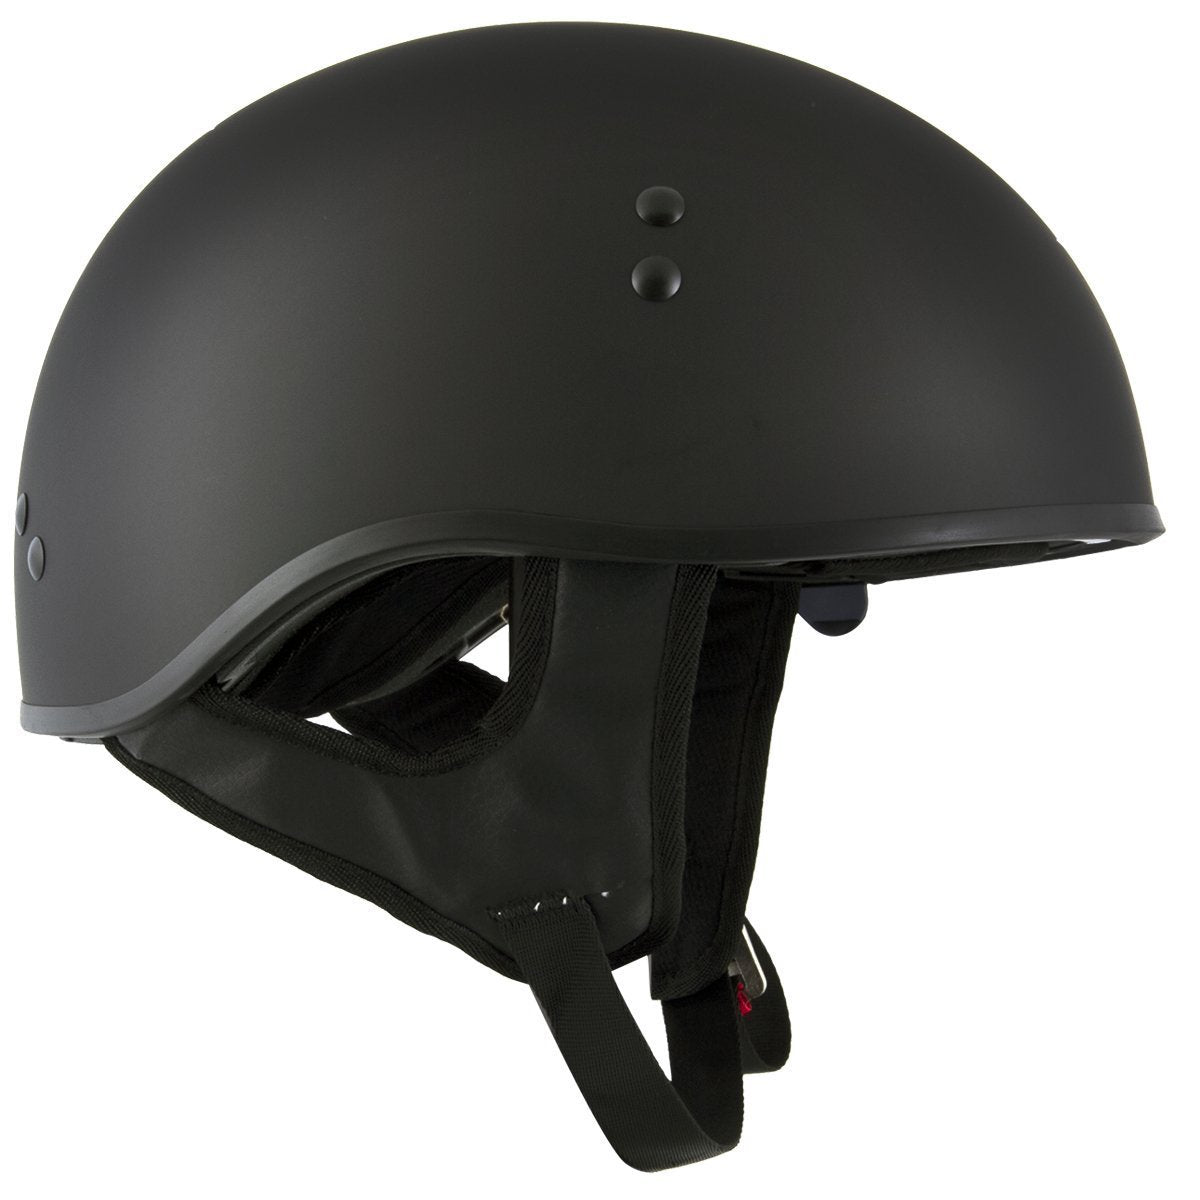 Hot Leathers T72 'Black Widow' Flat Black Motorcycle Half Helmet with Drop Down Visor